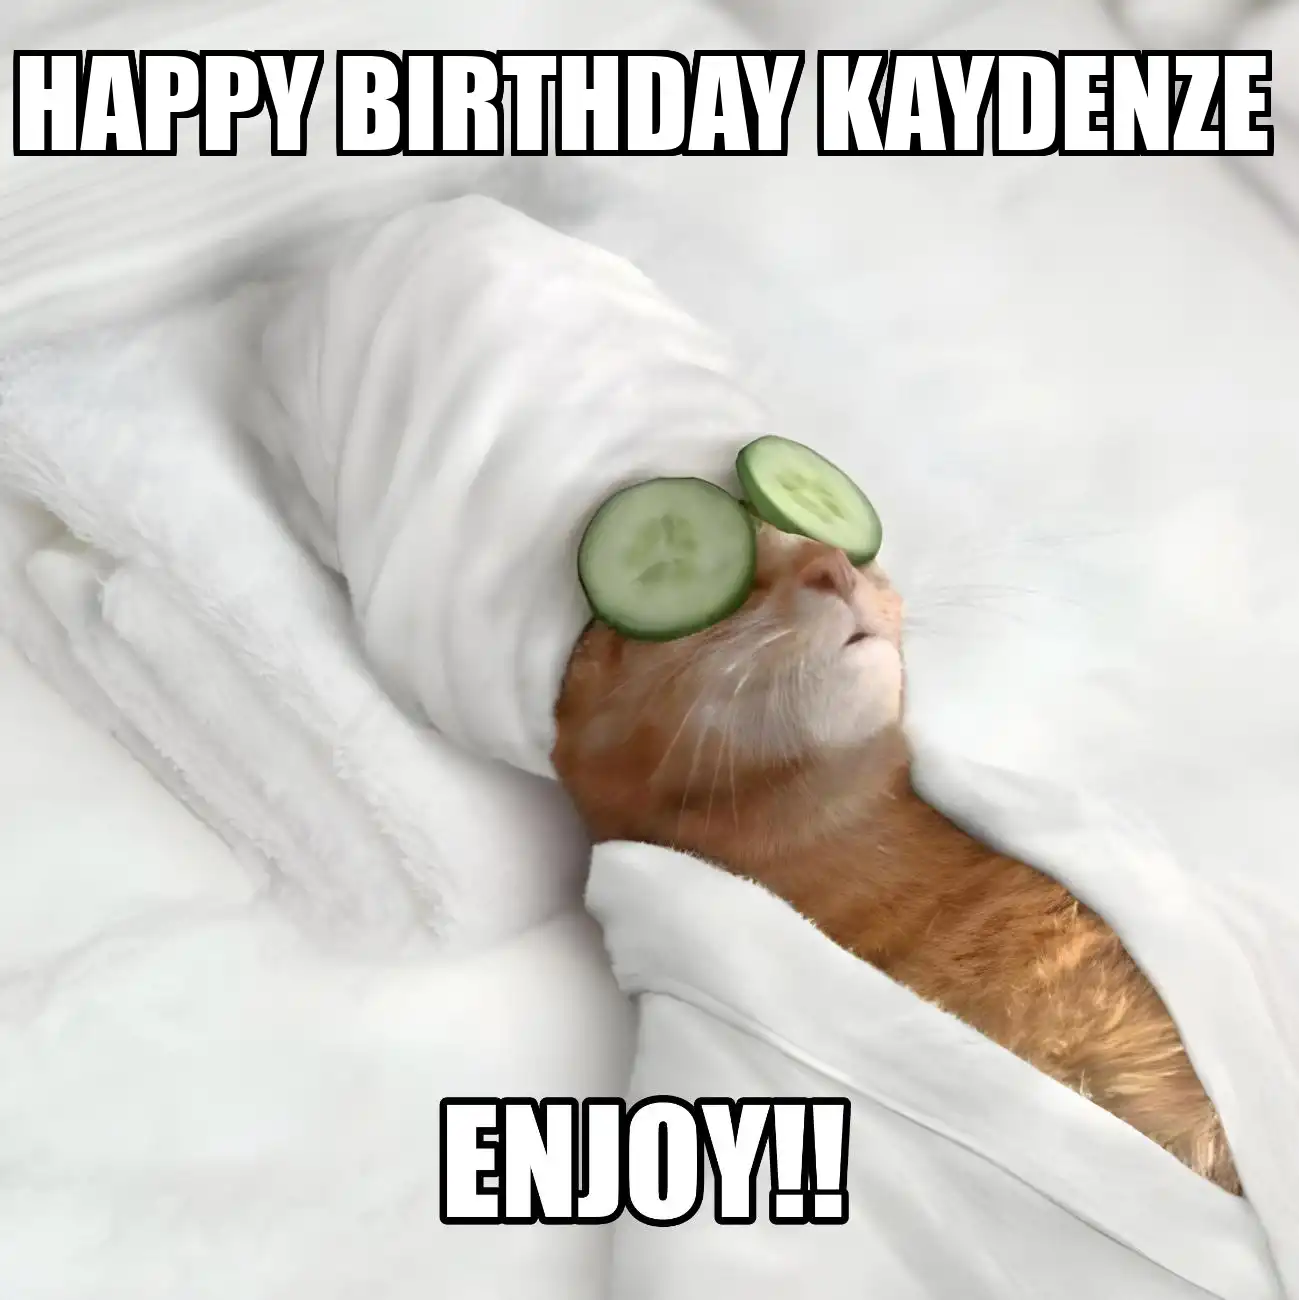 Happy Birthday Kaydenze Enjoy Cat Meme